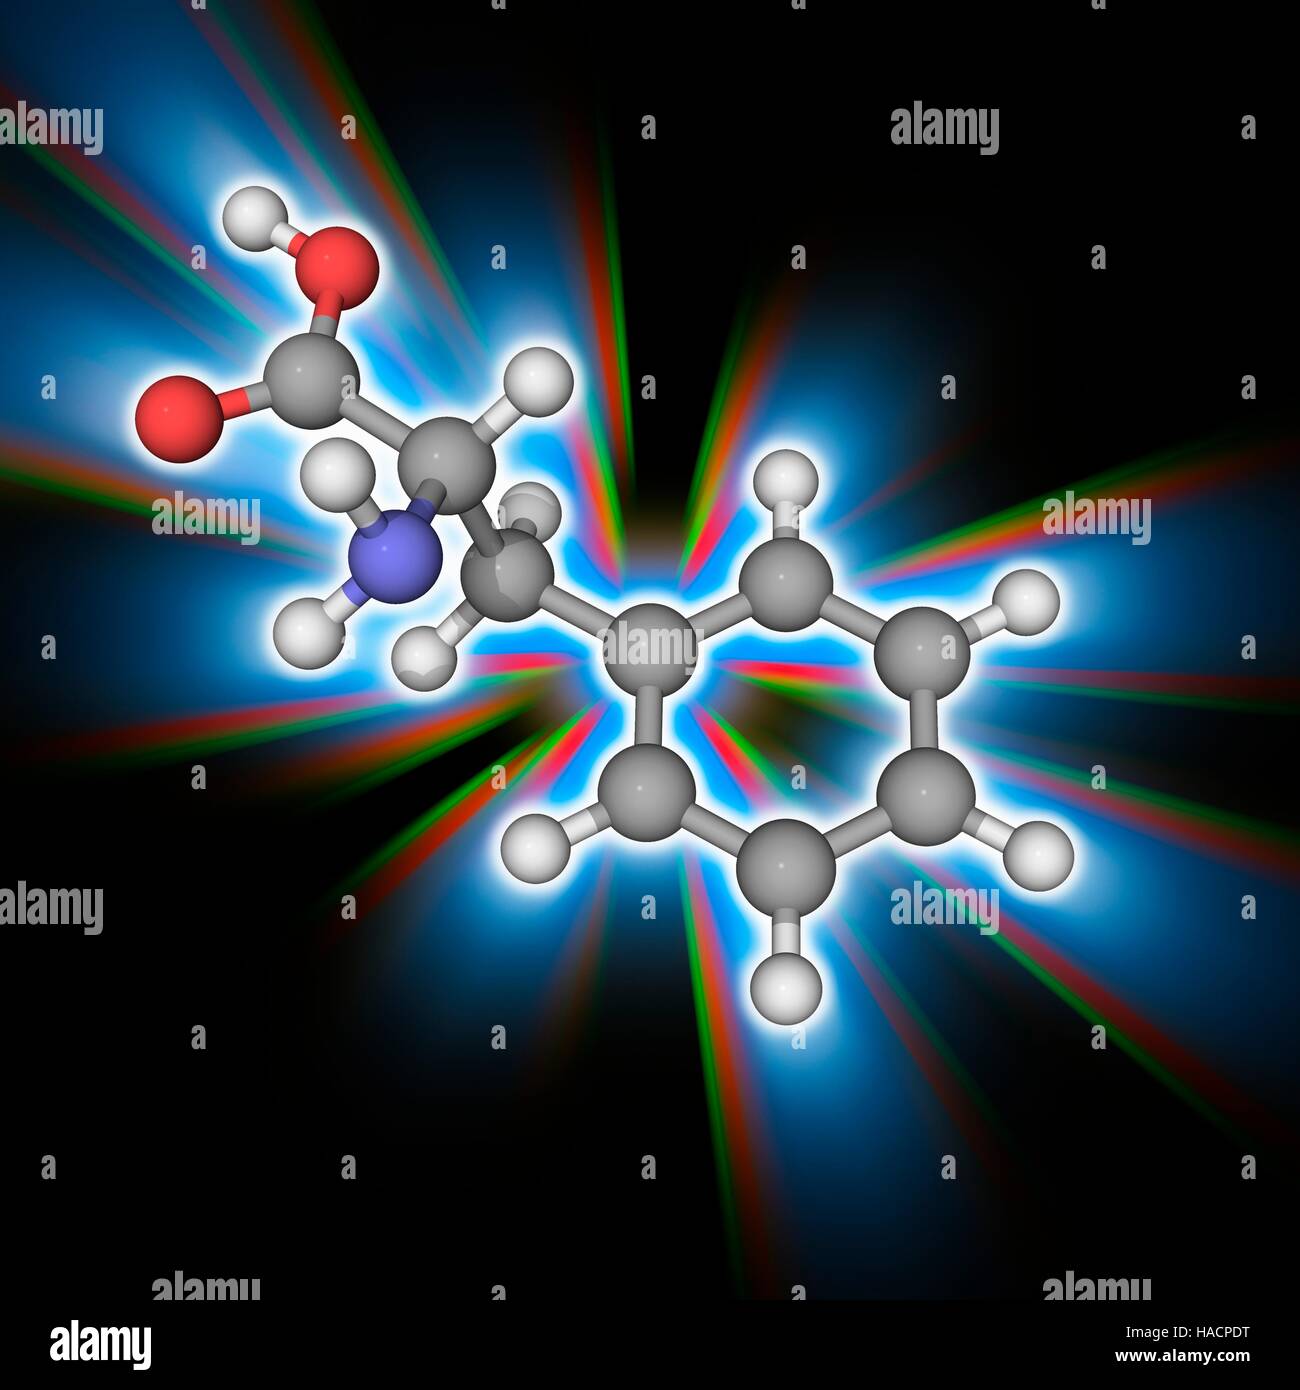 Phenylalanin. Molekulares Modell des wesentlichen Alpha-amino Acid Phenylalanin (C9. H11. N.O2), einer der 20 gemeinsame Aminosäuren verwendet, um Form Proteine. Atome als Kugeln dargestellt werden und sind farblich gekennzeichnet: Kohlenstoff (grau), Wasserstoff (weiß), Stickstoff (blau) und Sauerstoff (rot). Abbildung. Stockfoto